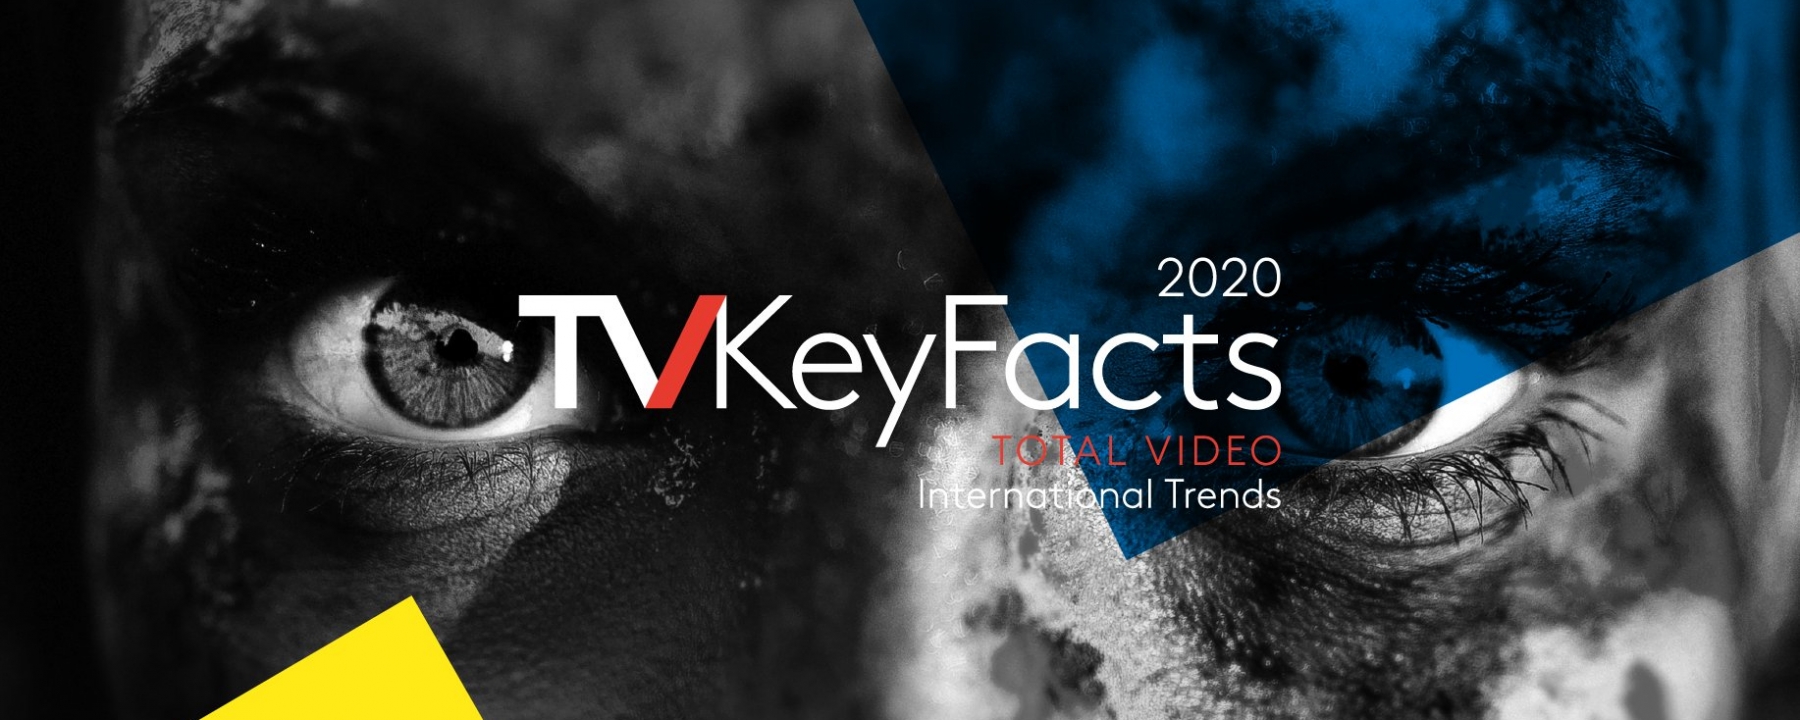 Tv Key Facts, live organisé par RTL ADConnect le 19 novembre 